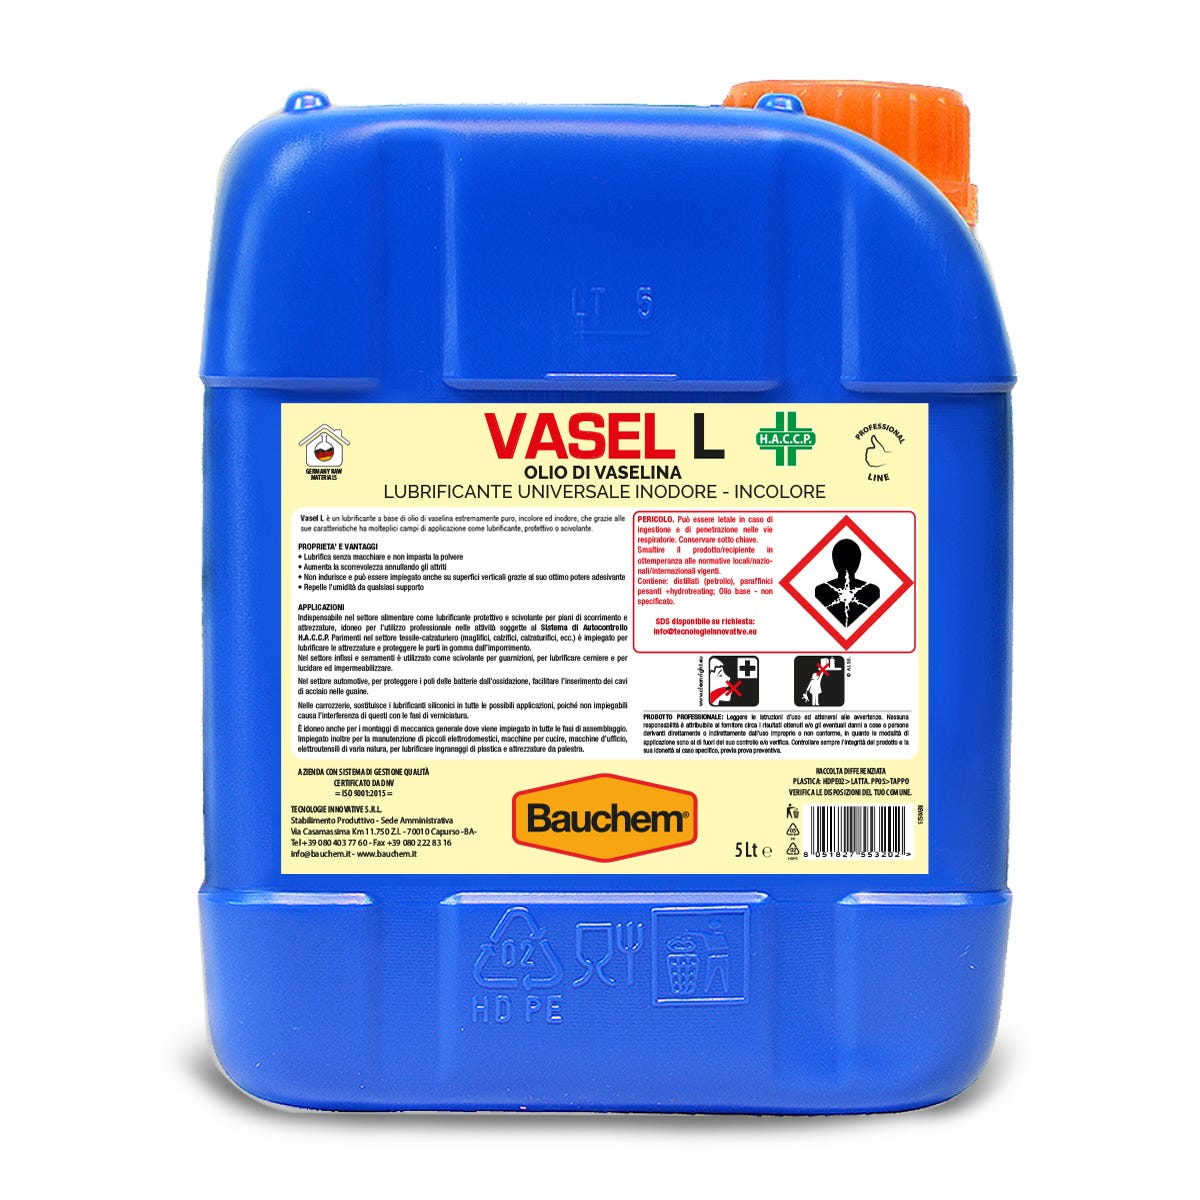 BAUCHEM Vasel L Olio di Vaselina Lubrificante Universale Inodore e